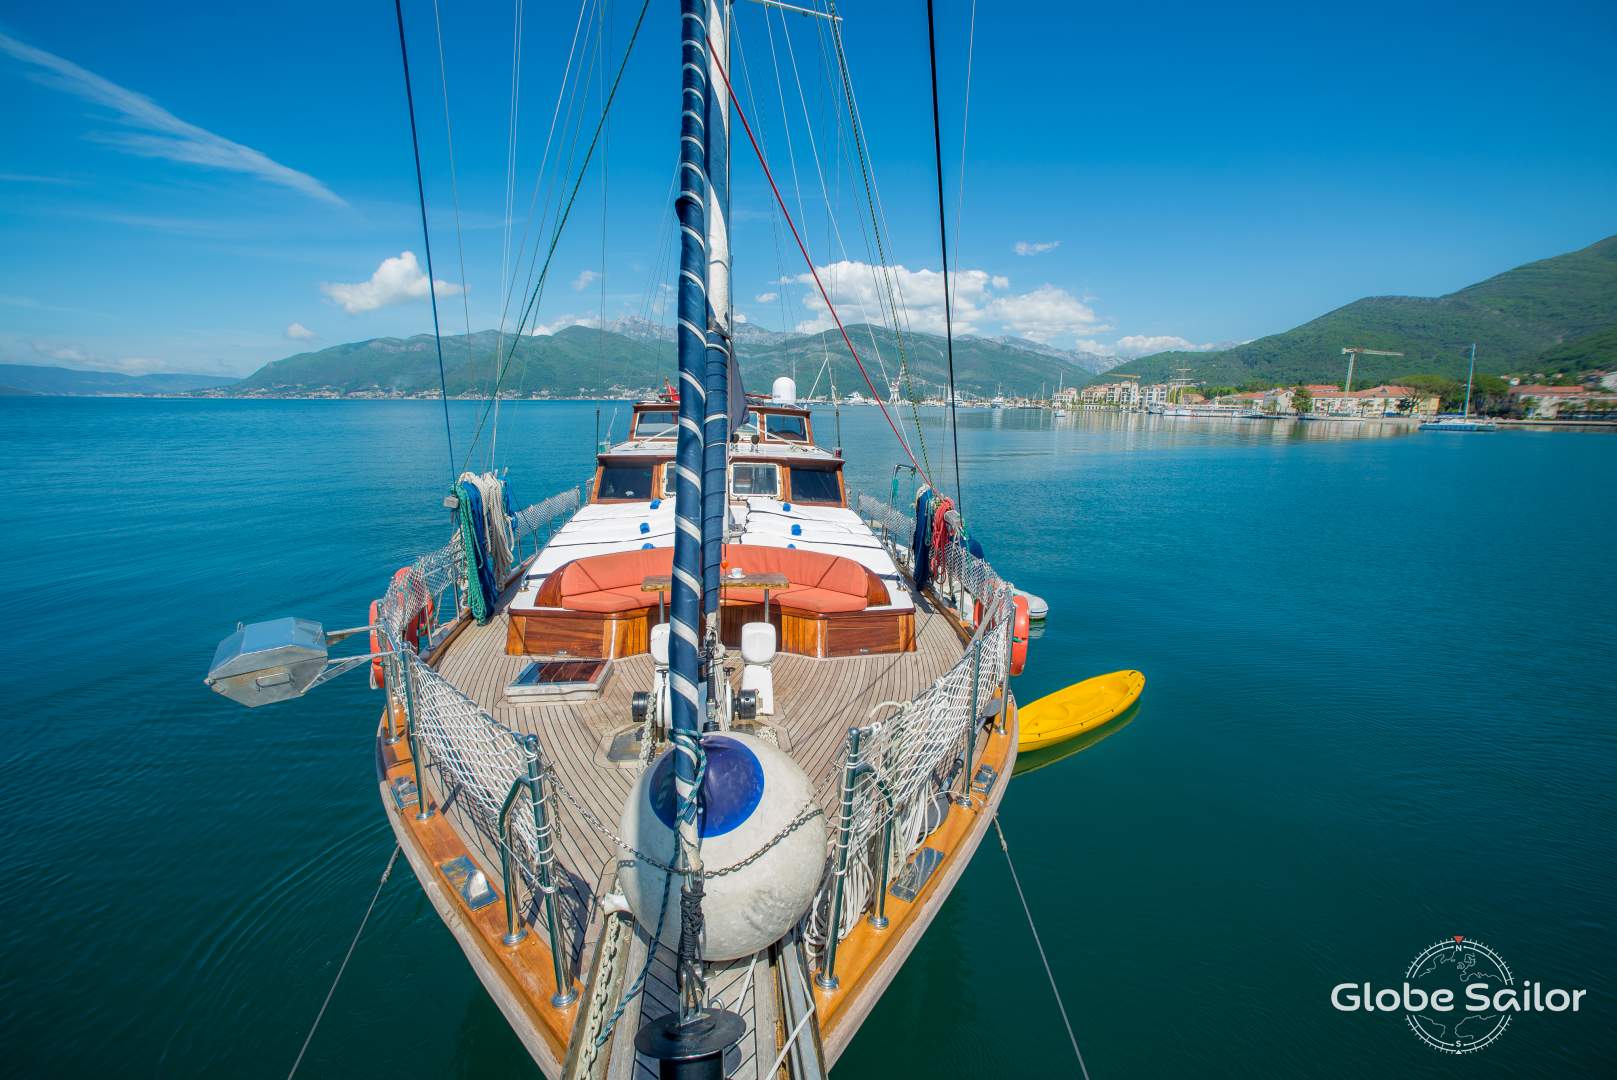 Explorez l'Adriatique à bord d'une goélette traditionnelle